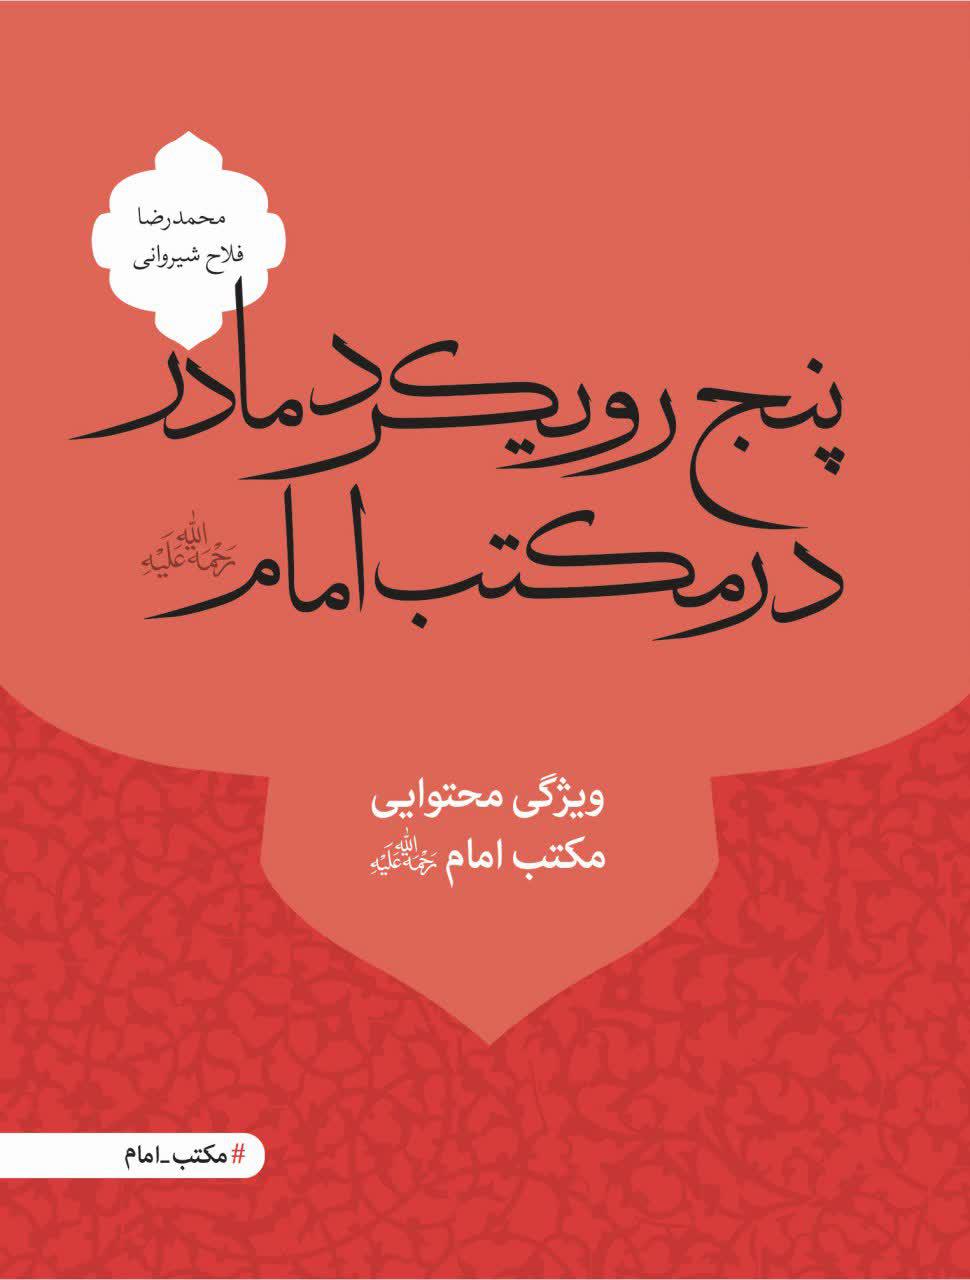 کتاب «پنج رویکرد مادر در مکتب امام» منتشر شد